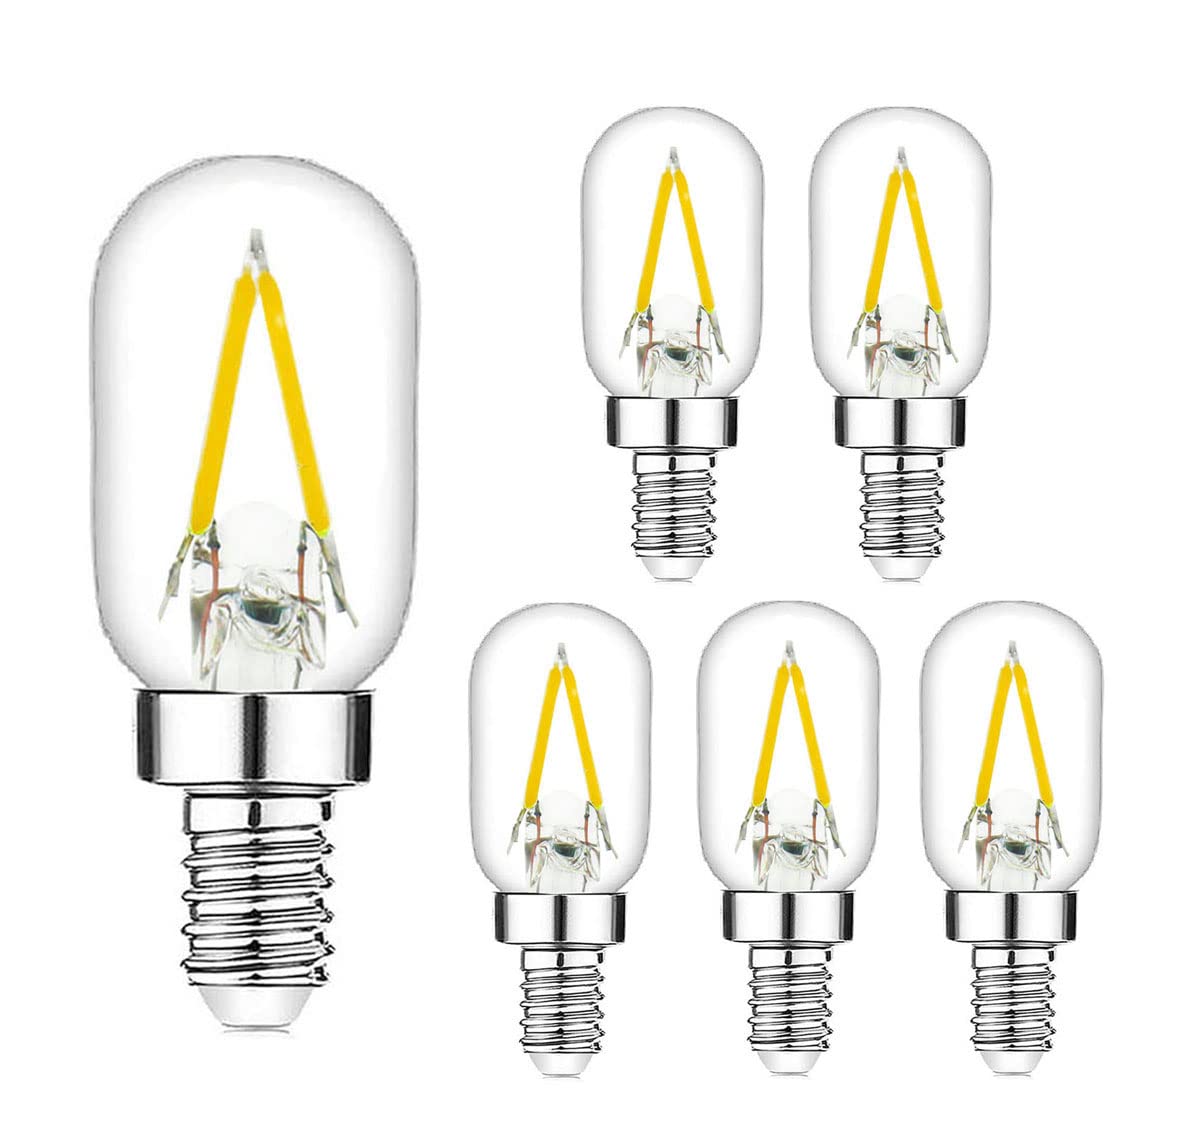 Bombilla LED para Lampara de Sal: Ahorra Energía y Dinero - ¡Compra Ahora!